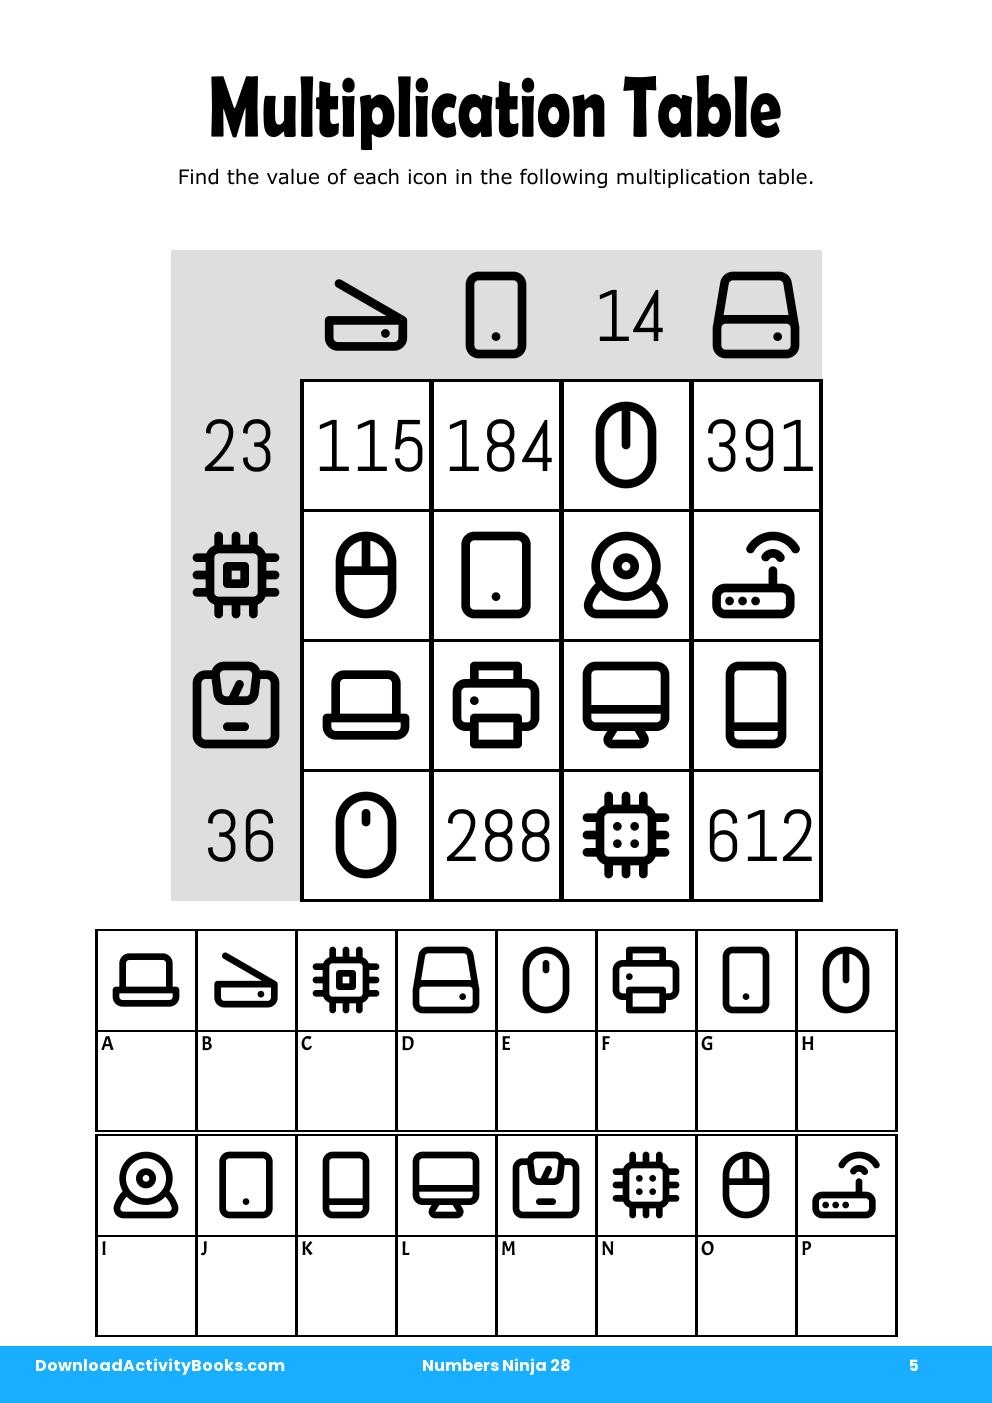 Multiplication Table in Numbers Ninja 28